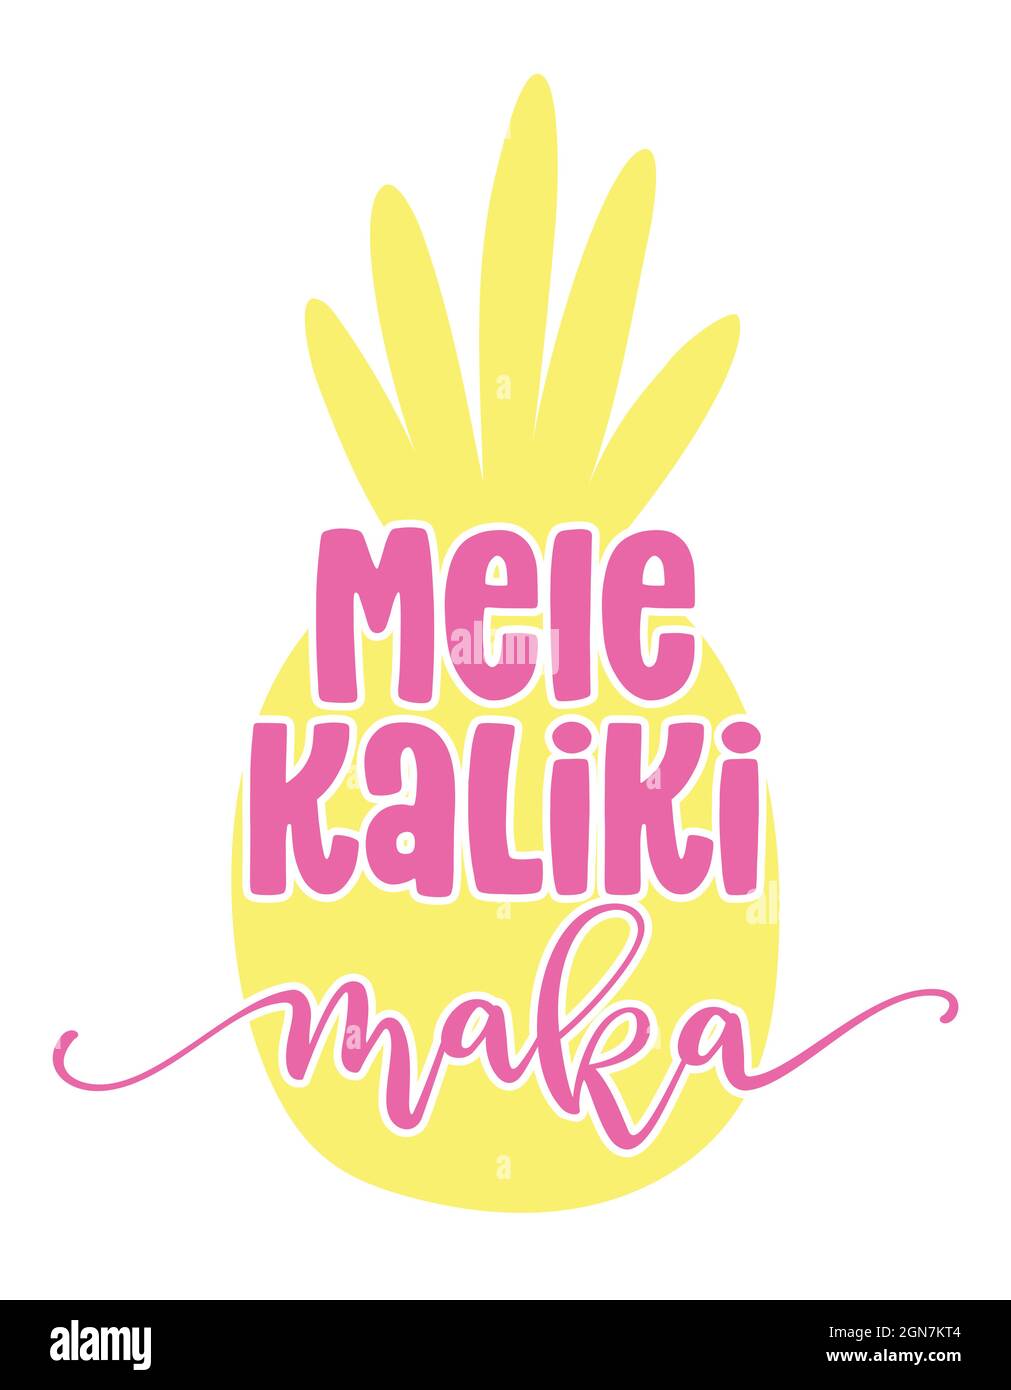 Mele Kalikimaka (Joyeux noël à Hawaï) - illustration vectorielle de l'ananas dessiné à la main et de l'expression de Noël en forme d'ananas. Tiré à la main le Illustration de Vecteur